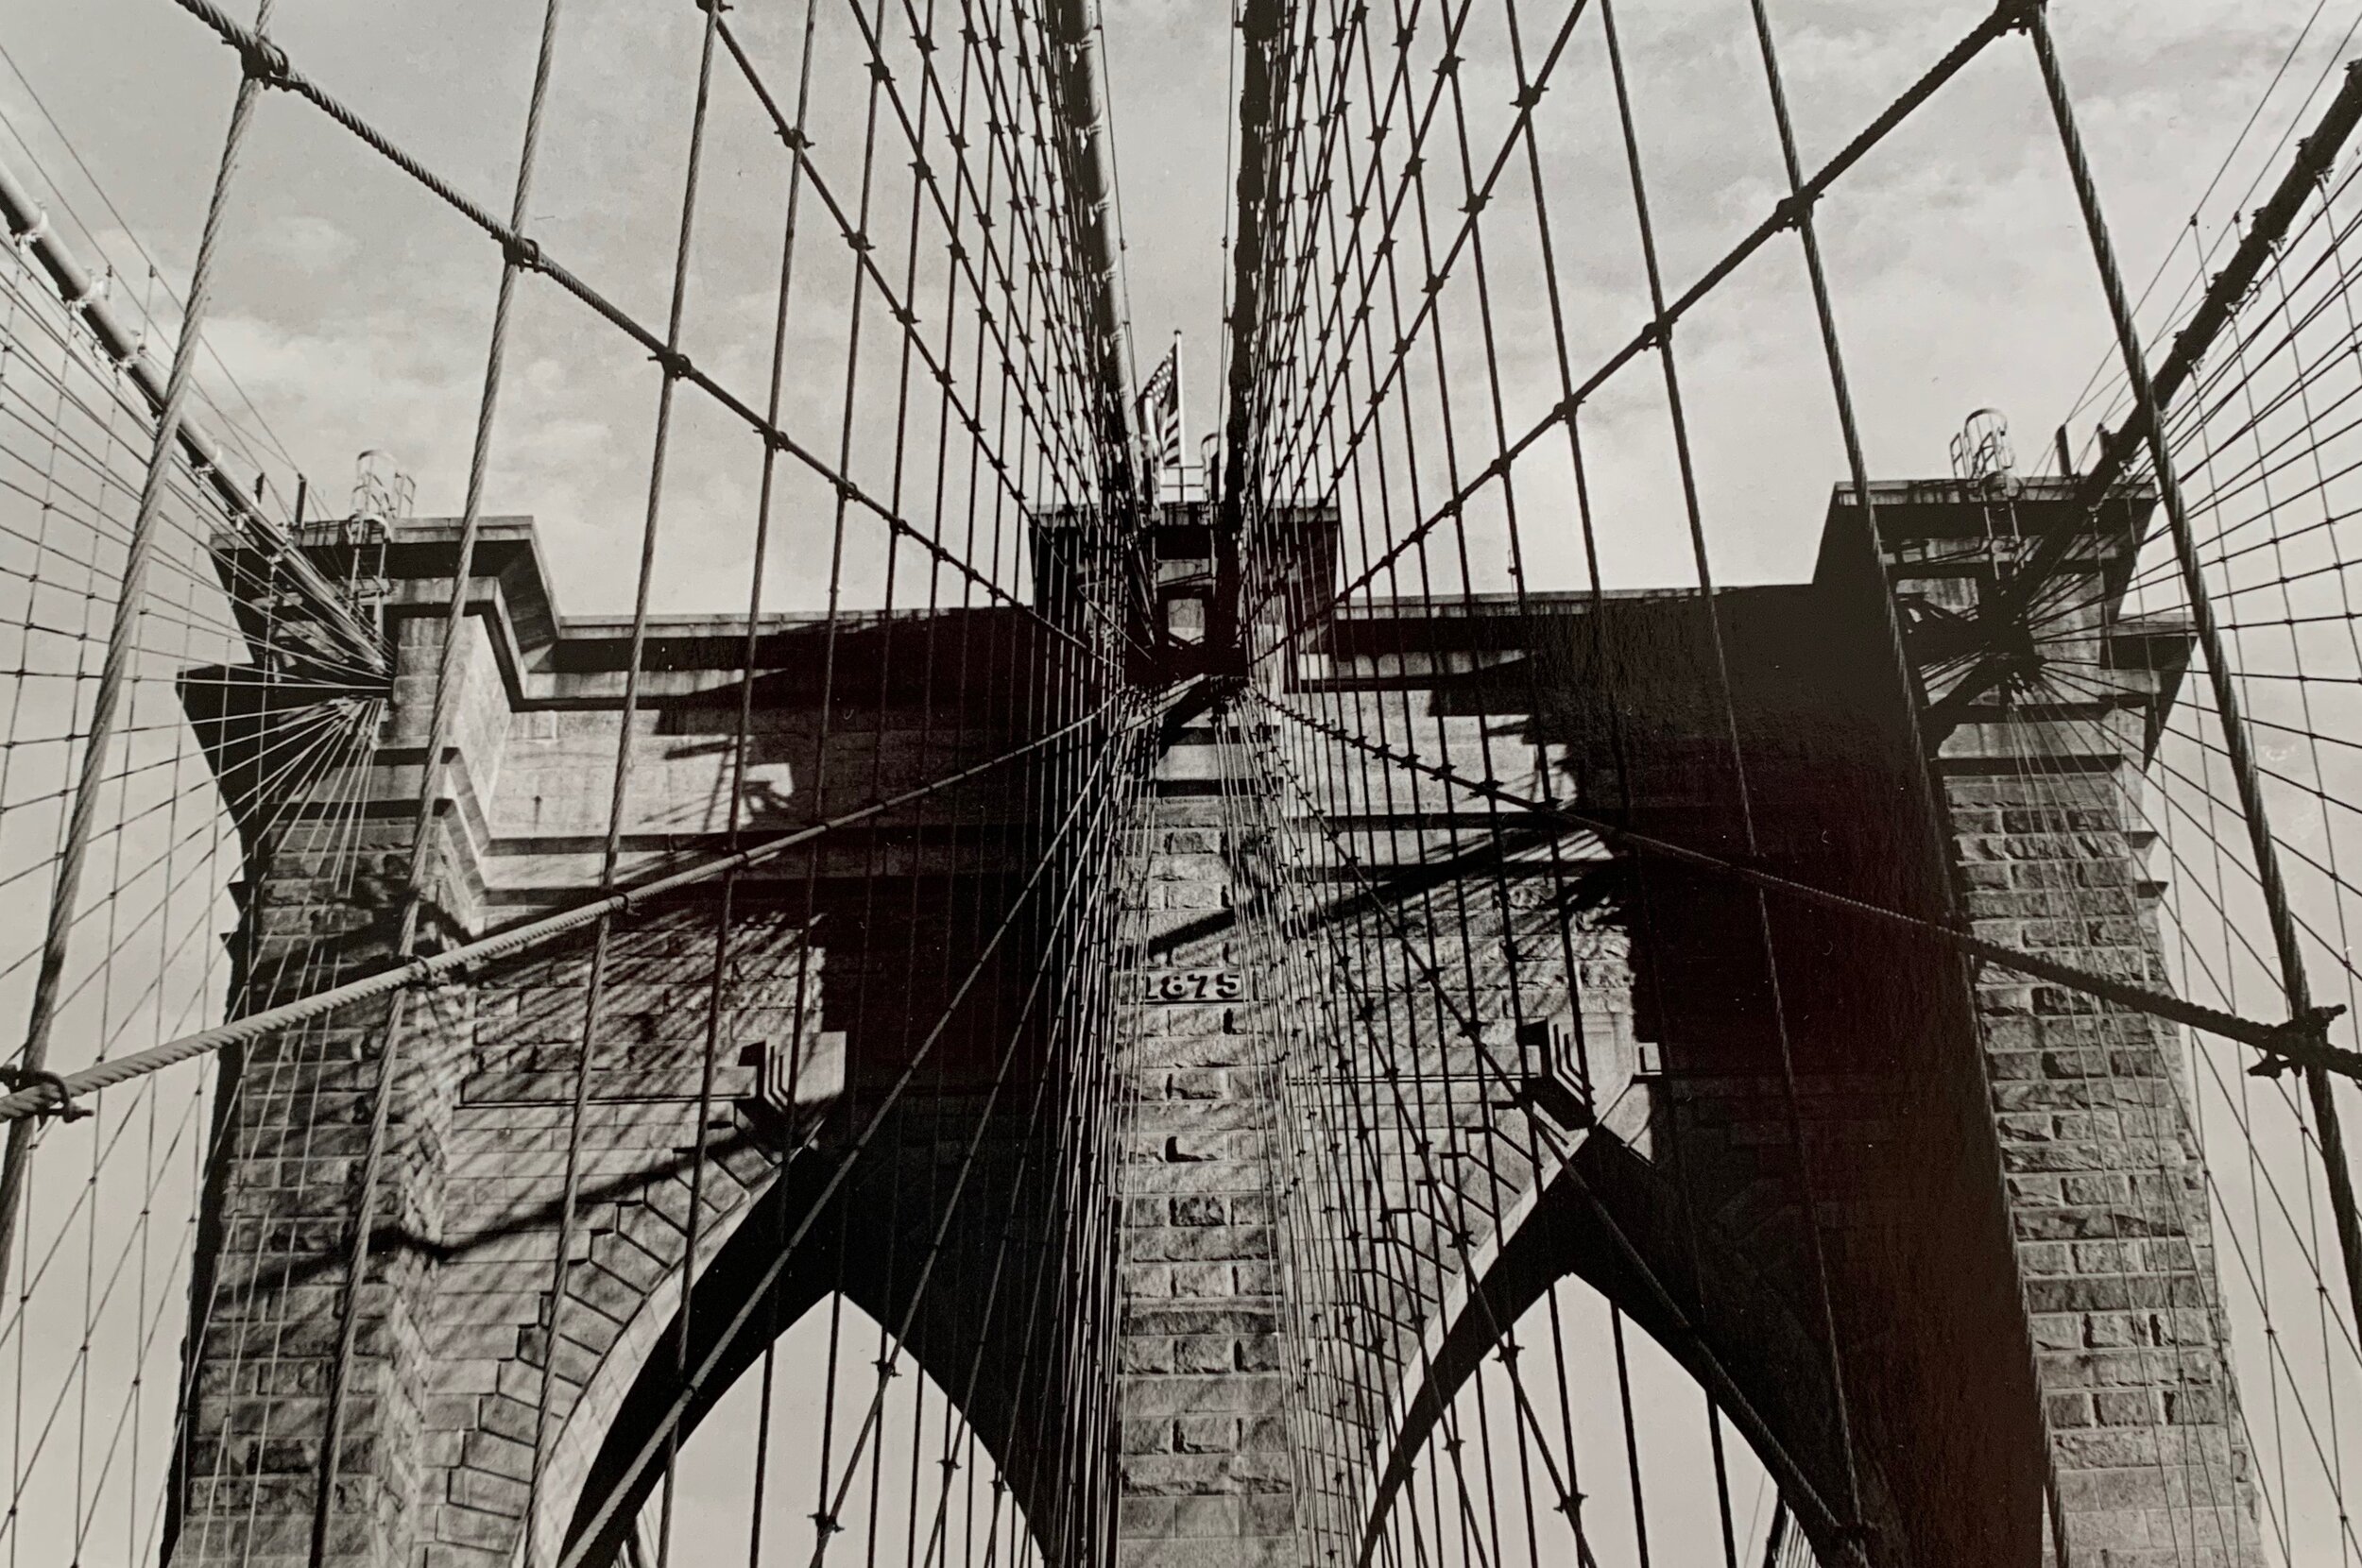  Analog print: The Brooklyn Bridge, 2019 